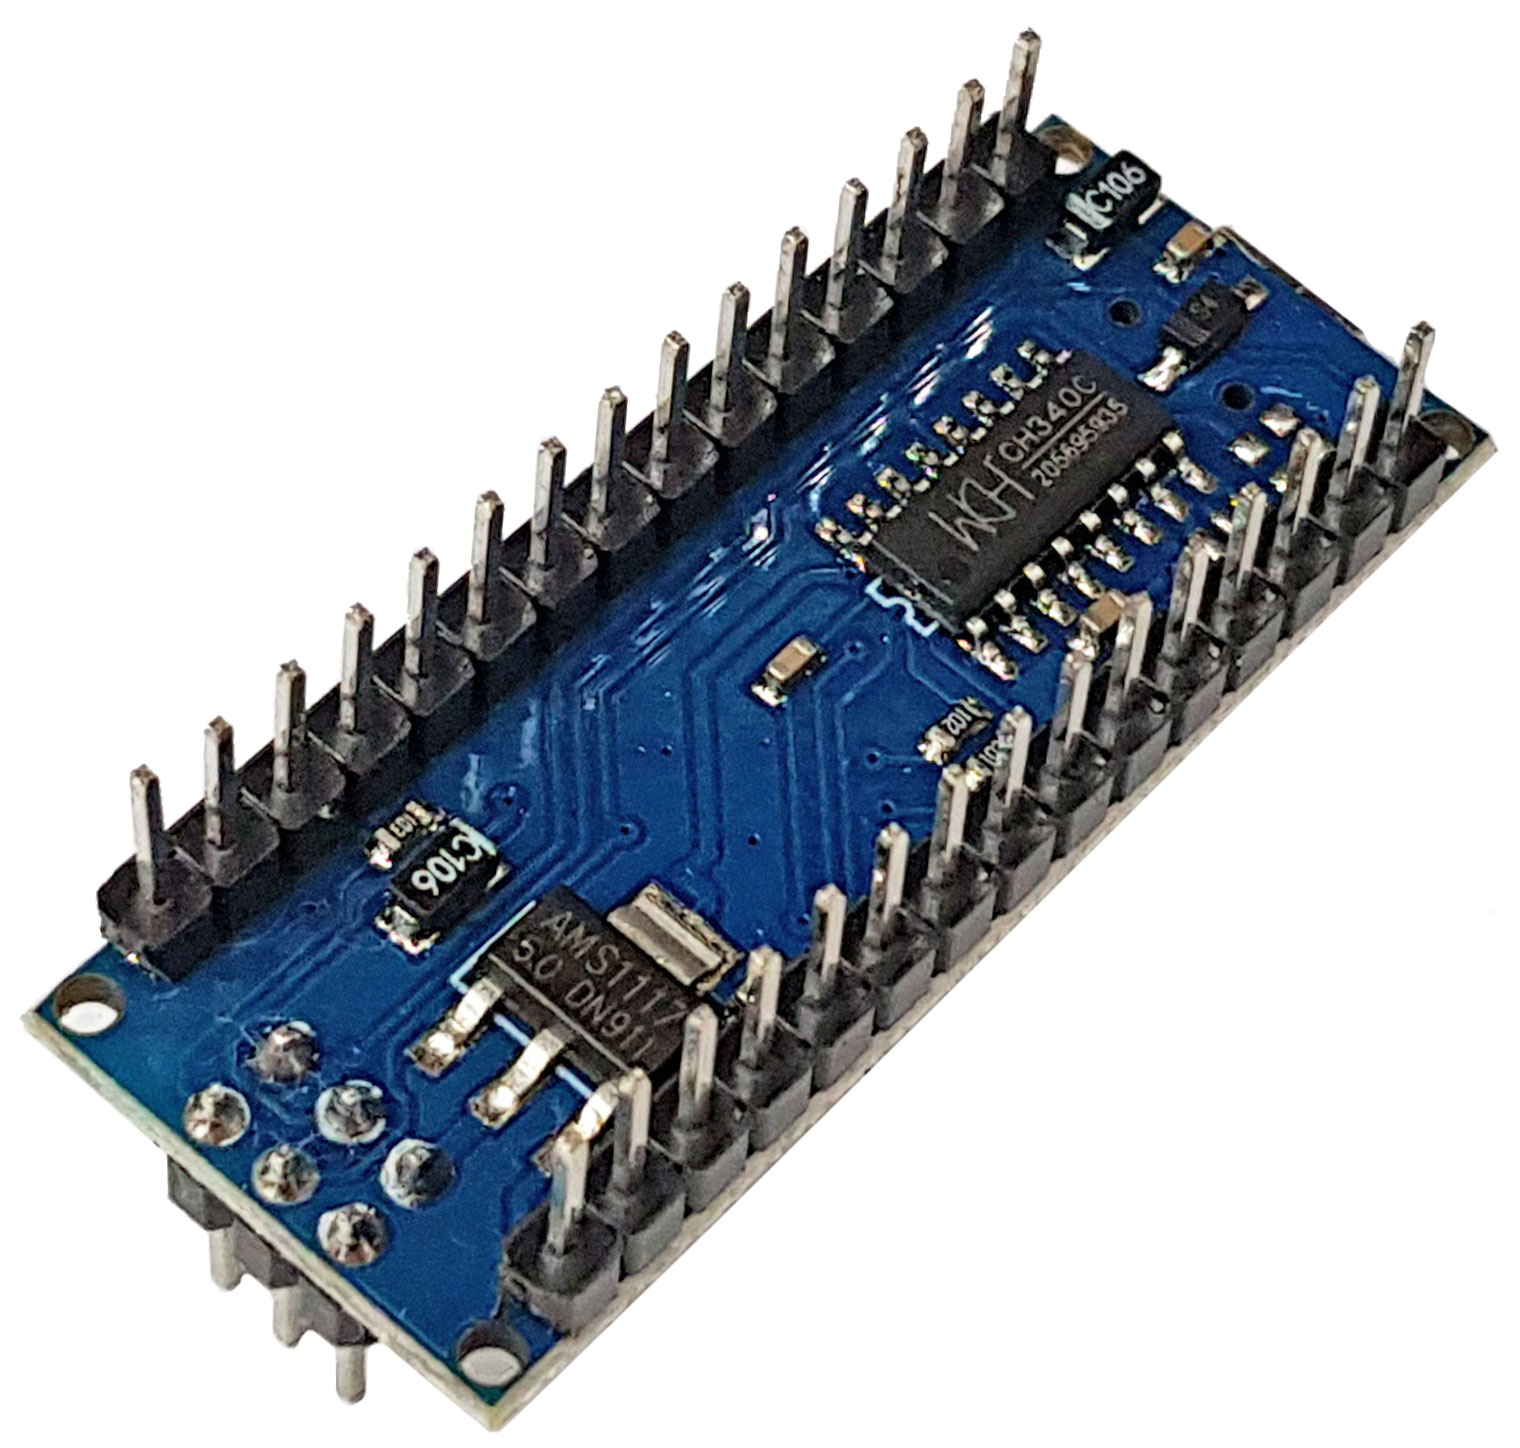 Arduino Nano V3.0 ATmega328P